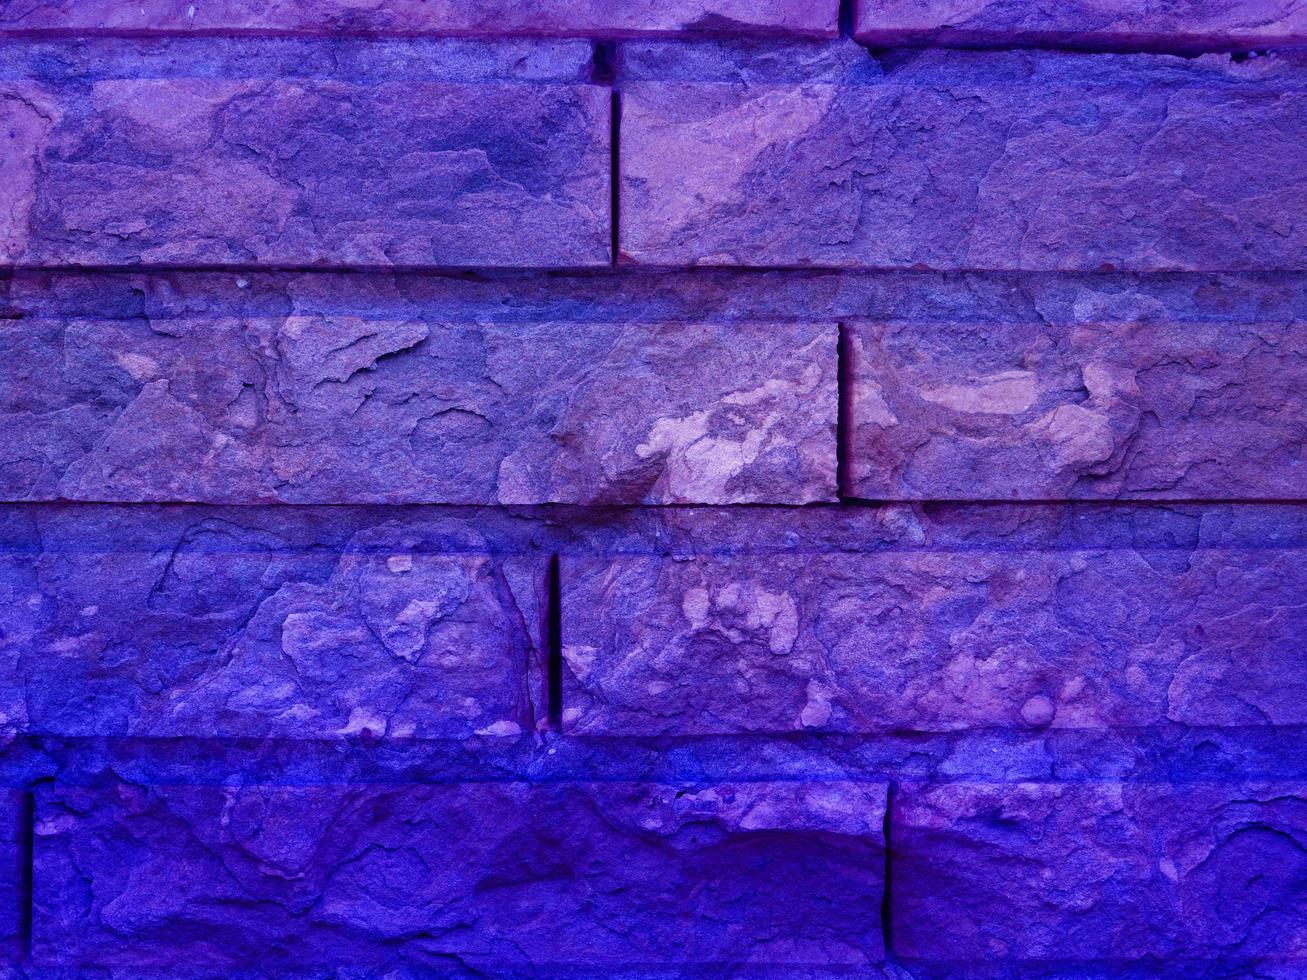 texture de pierre bleue photo